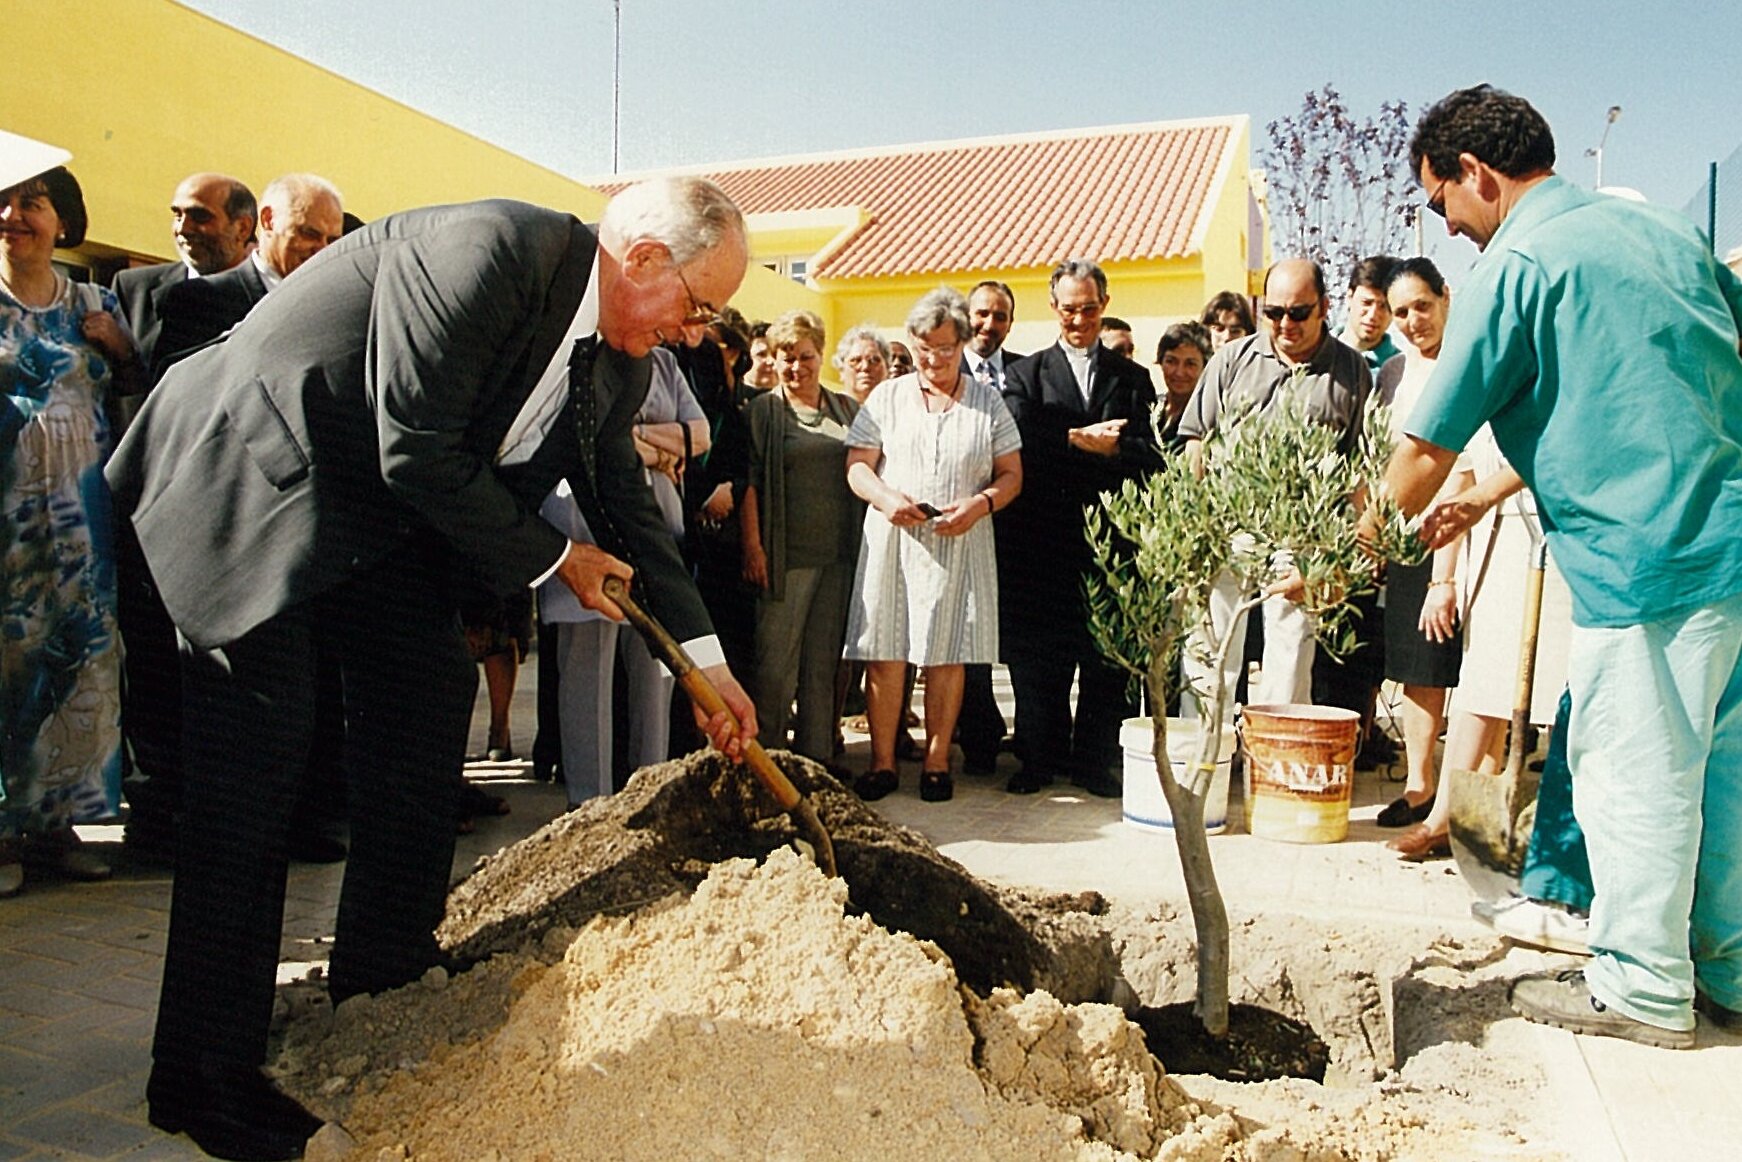 Pe. Ricardo planta a oliveira no C.C.Renascer